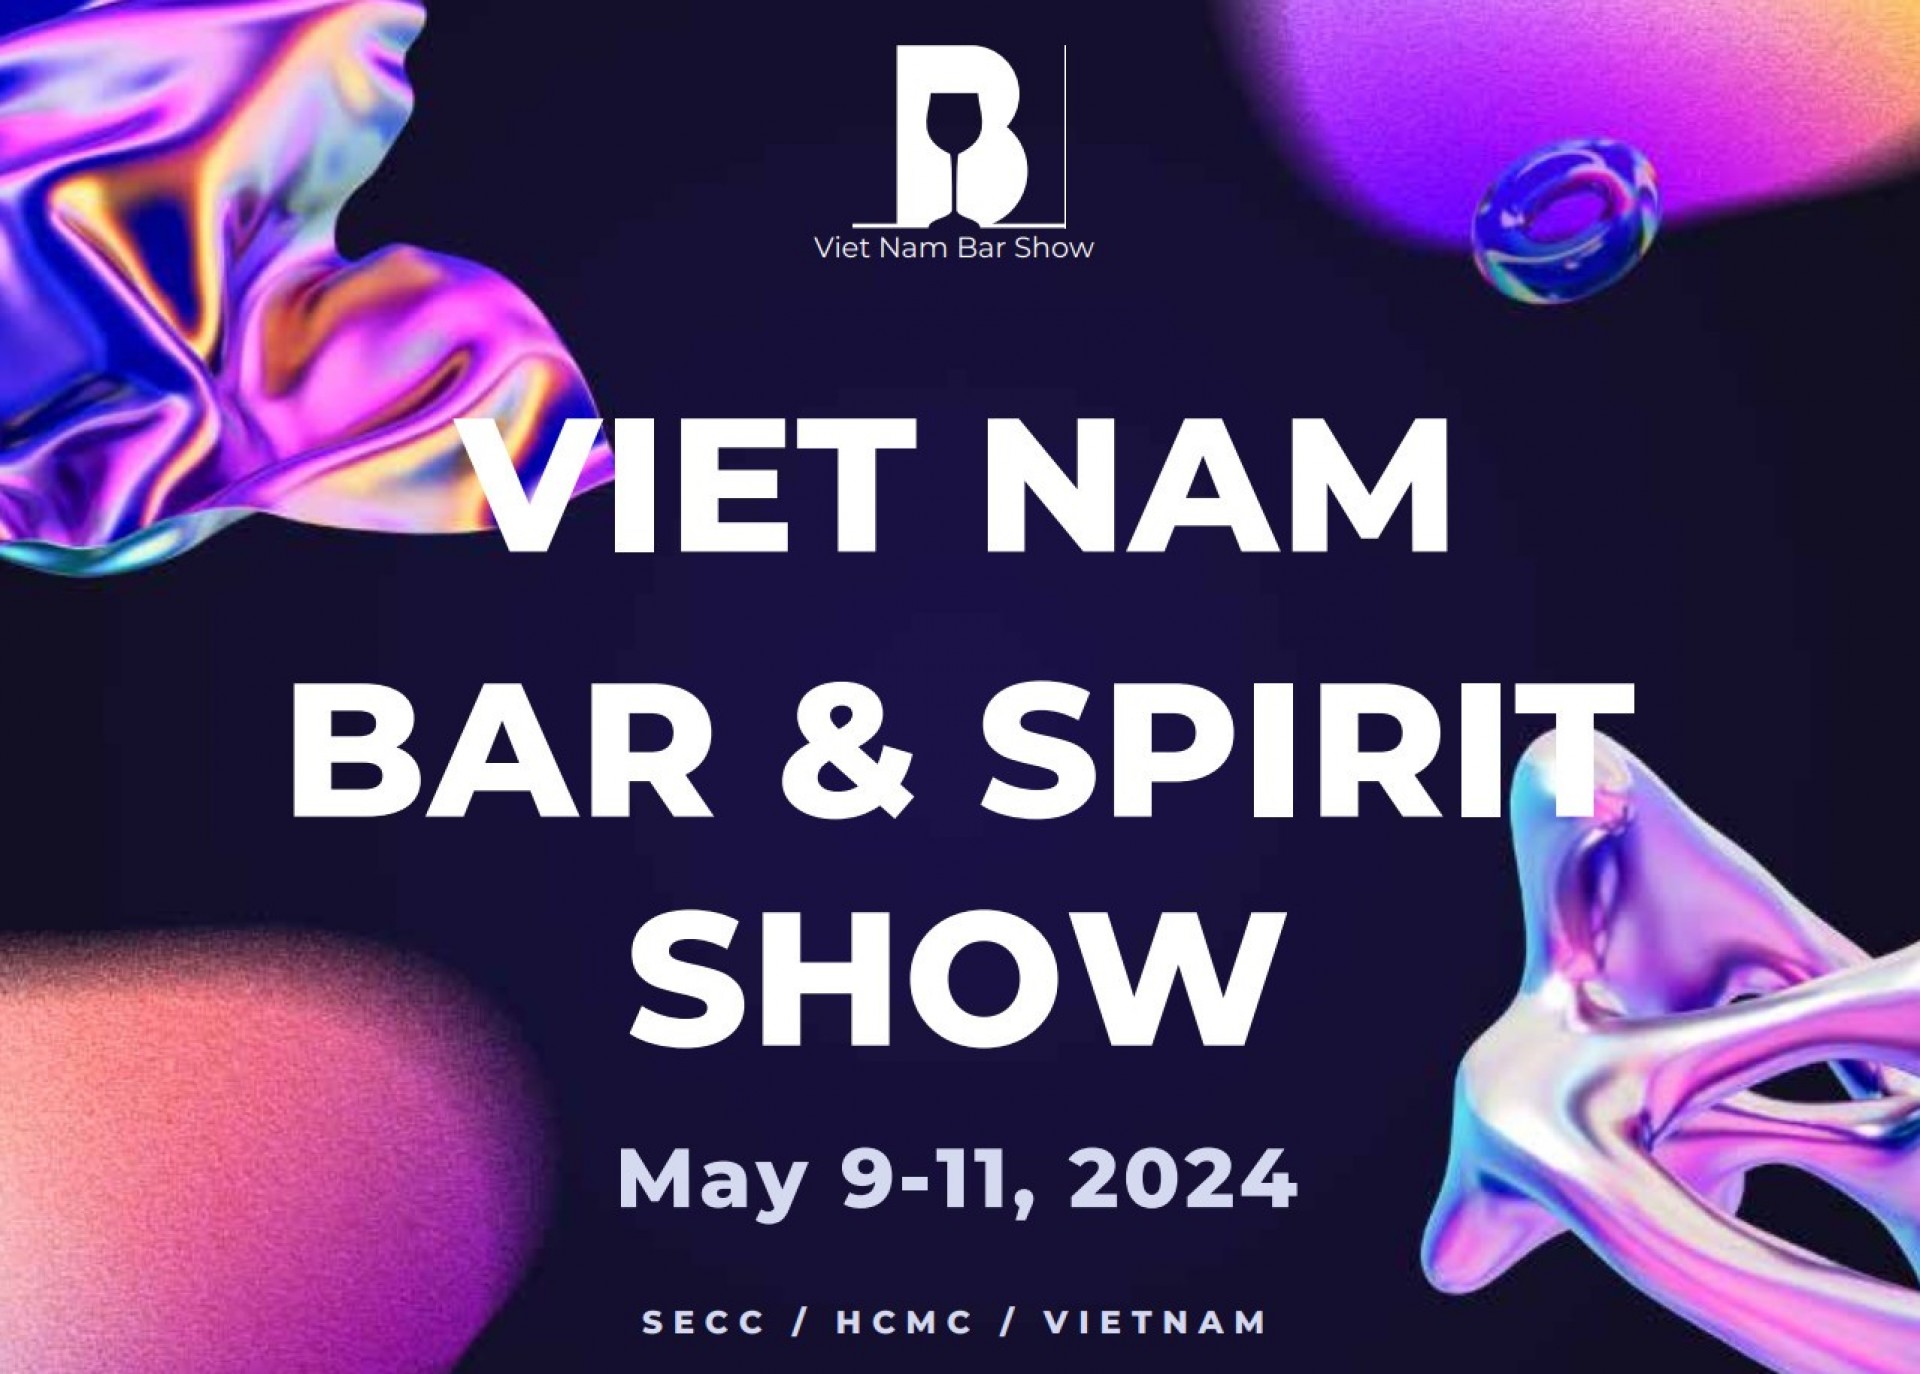 Triển lãm Vietnam Bar & Spirit Show